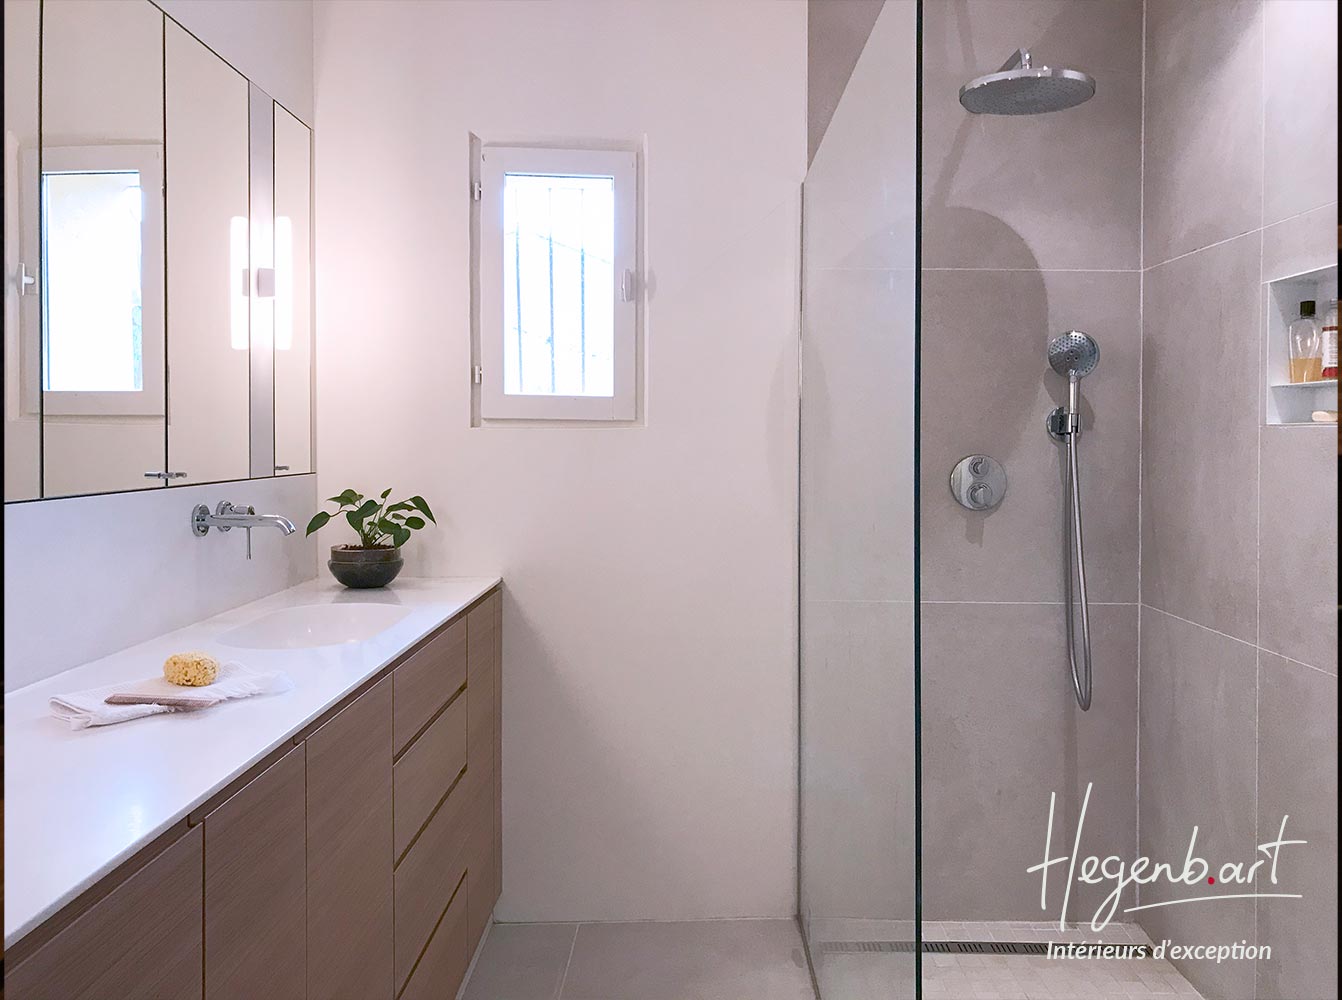 Une salle de bain chaleureuse pleine de rangements pratiques Image